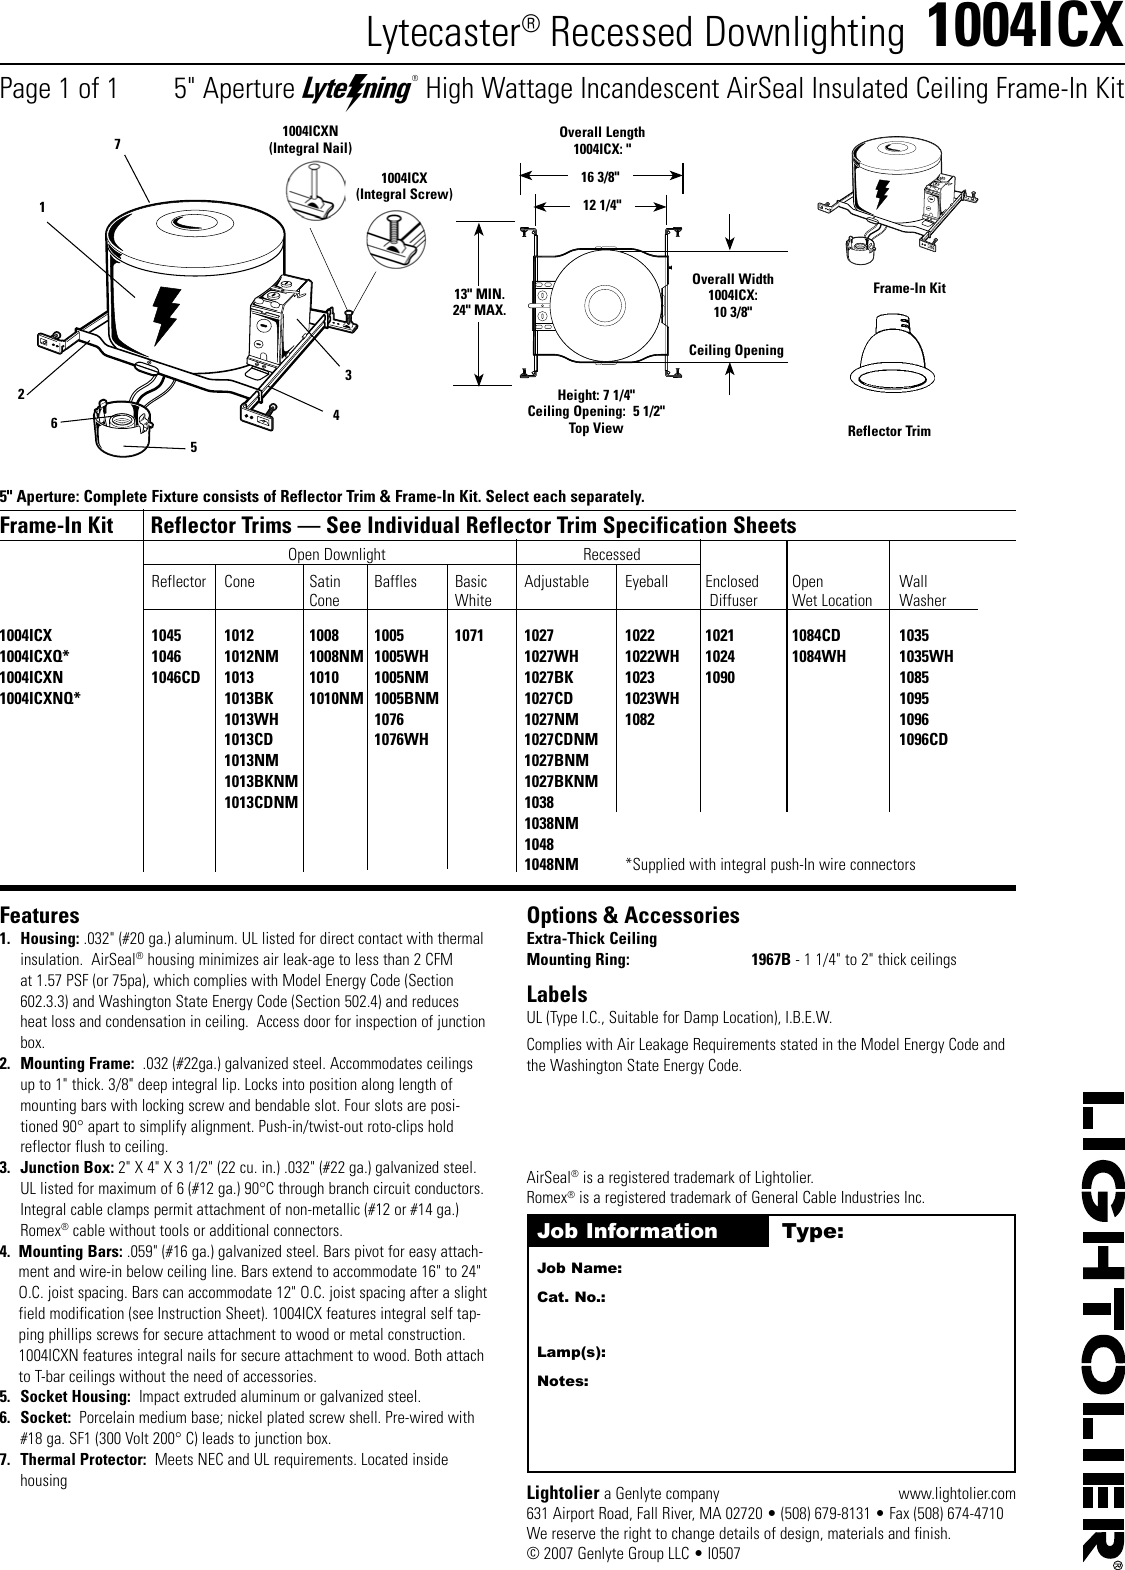 Page 1 of 1 - Lightolier Lightolier-Lytecaster-1004Icx-Users-Manual-  Lightolier-lytecaster-1004icx-users-manual